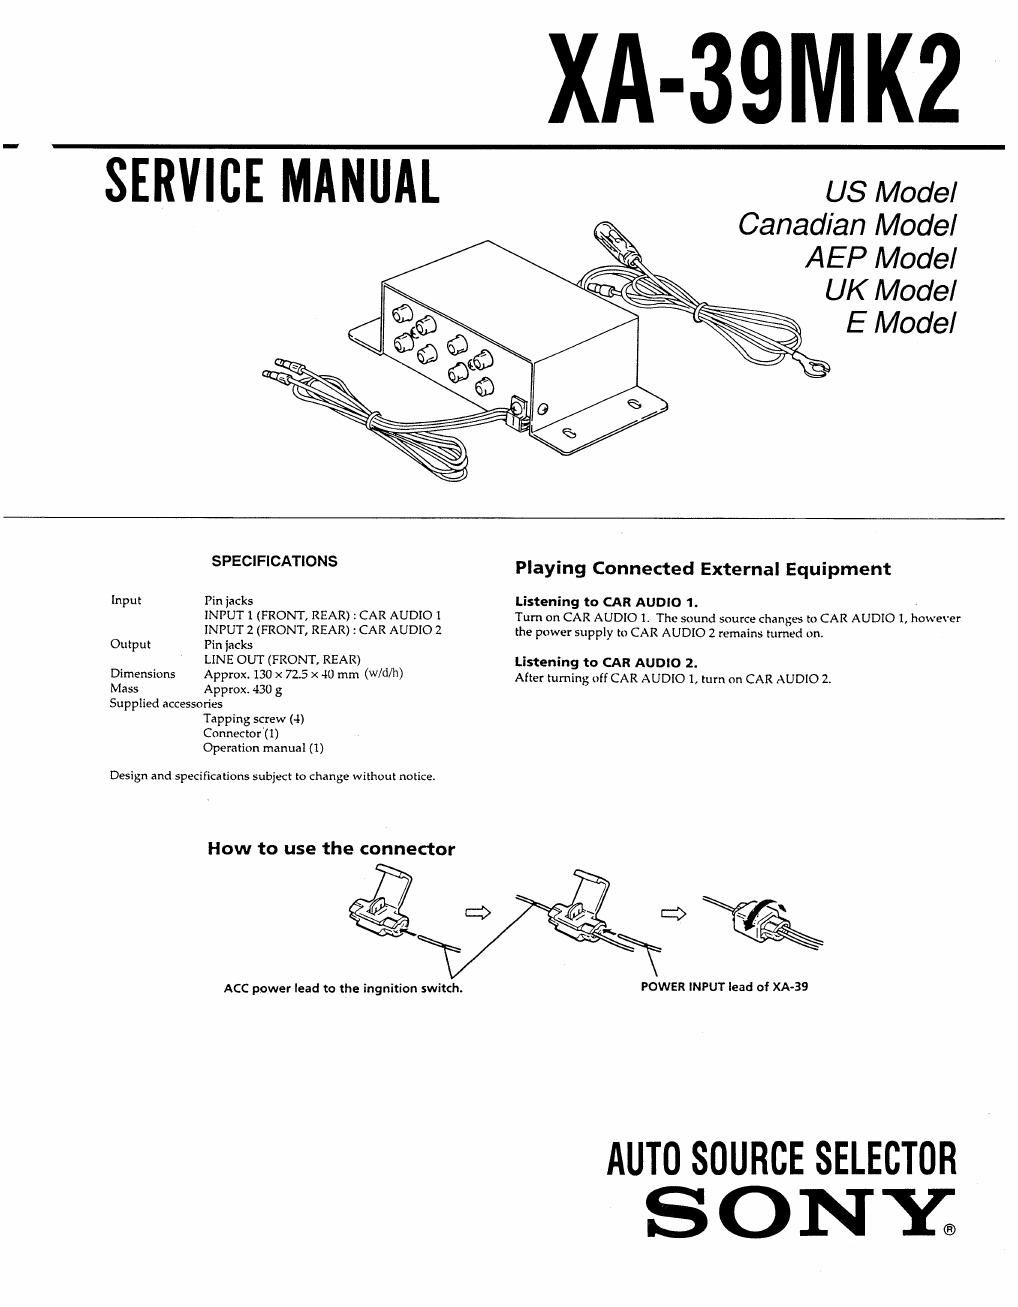 sony xa 39 mk2 service manual